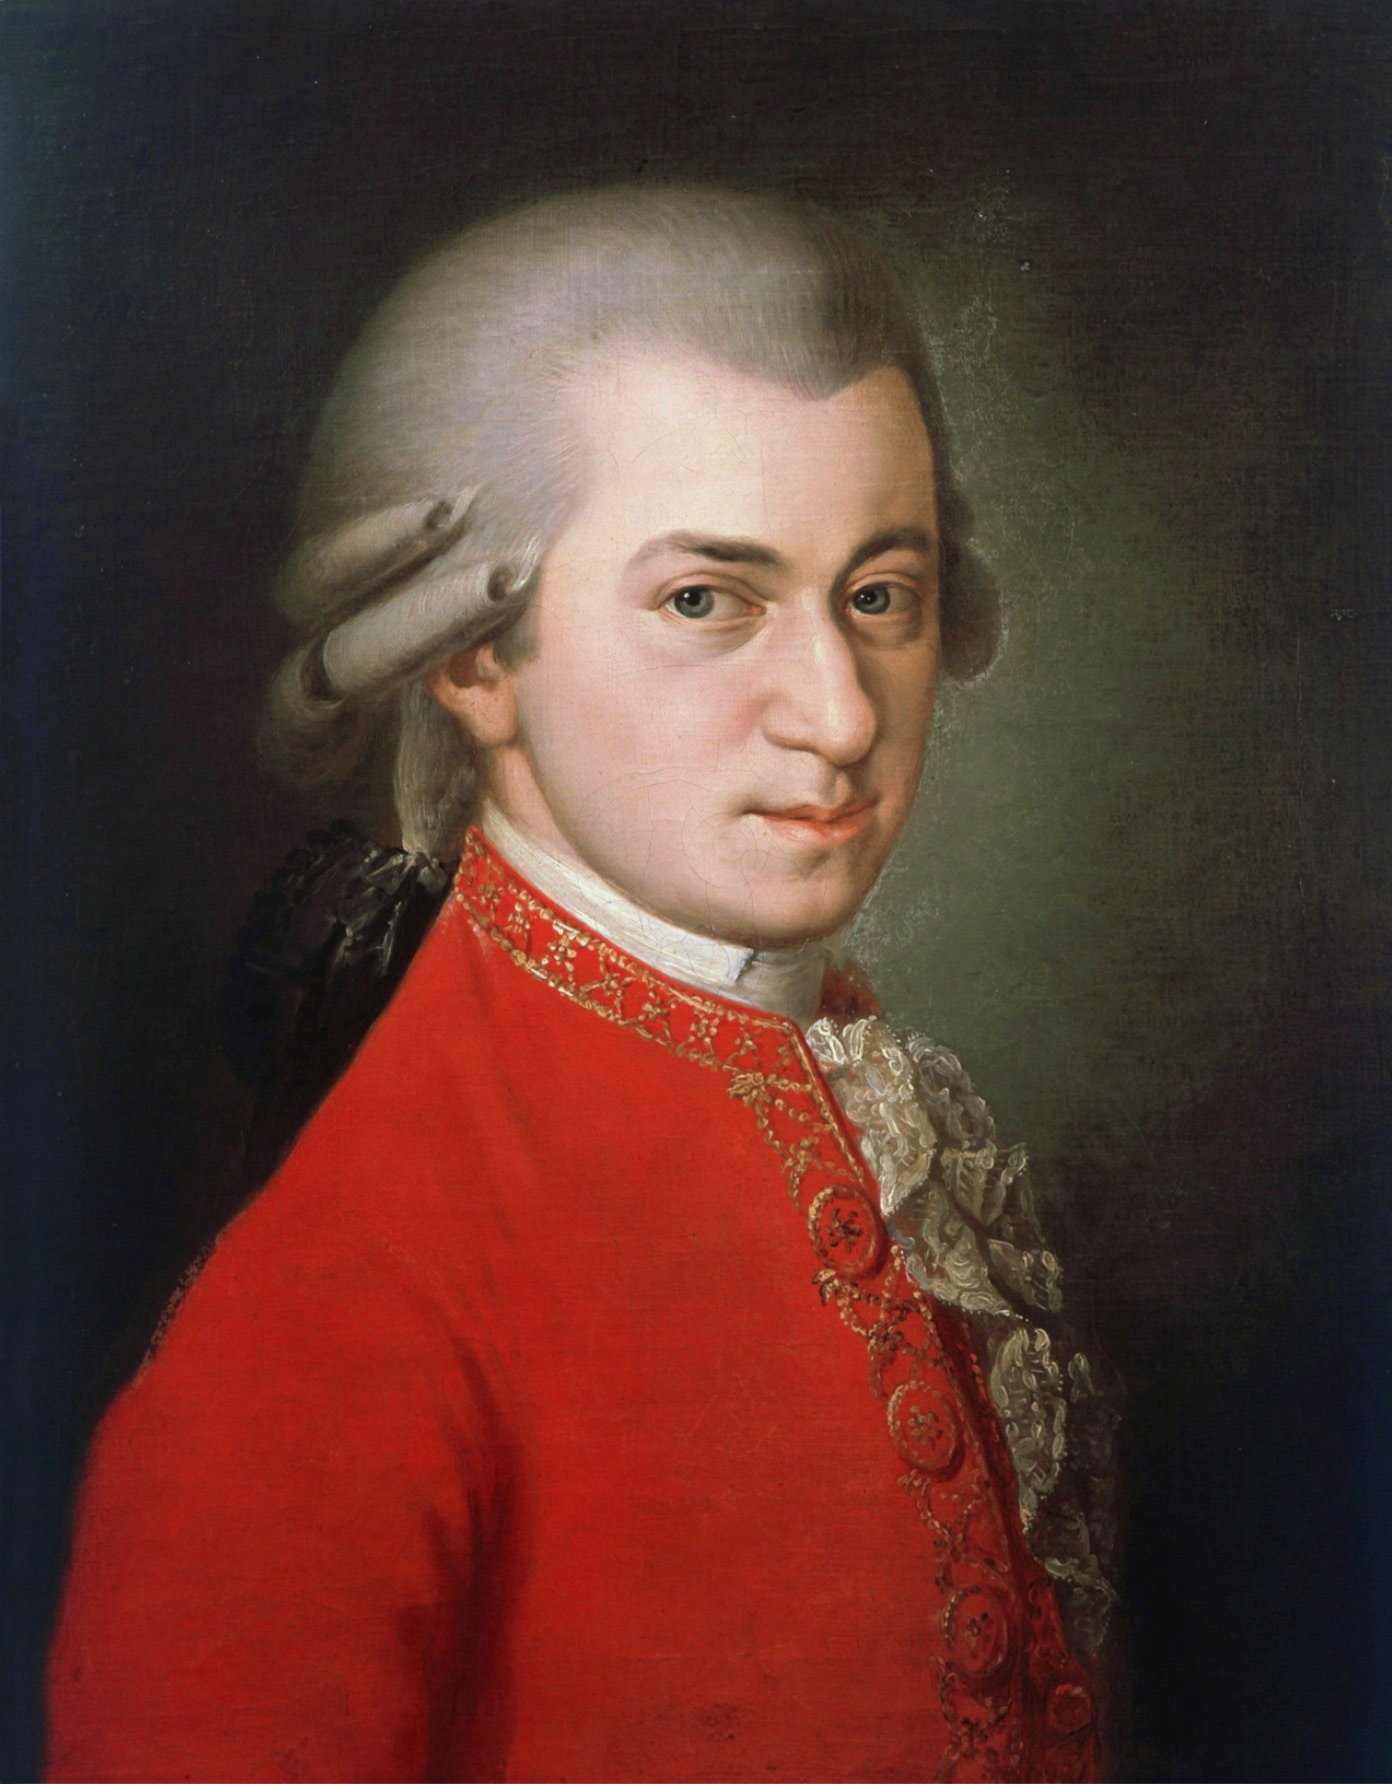 Cinc obres imprescindibles de Mozart, el clàssic que ho va petar